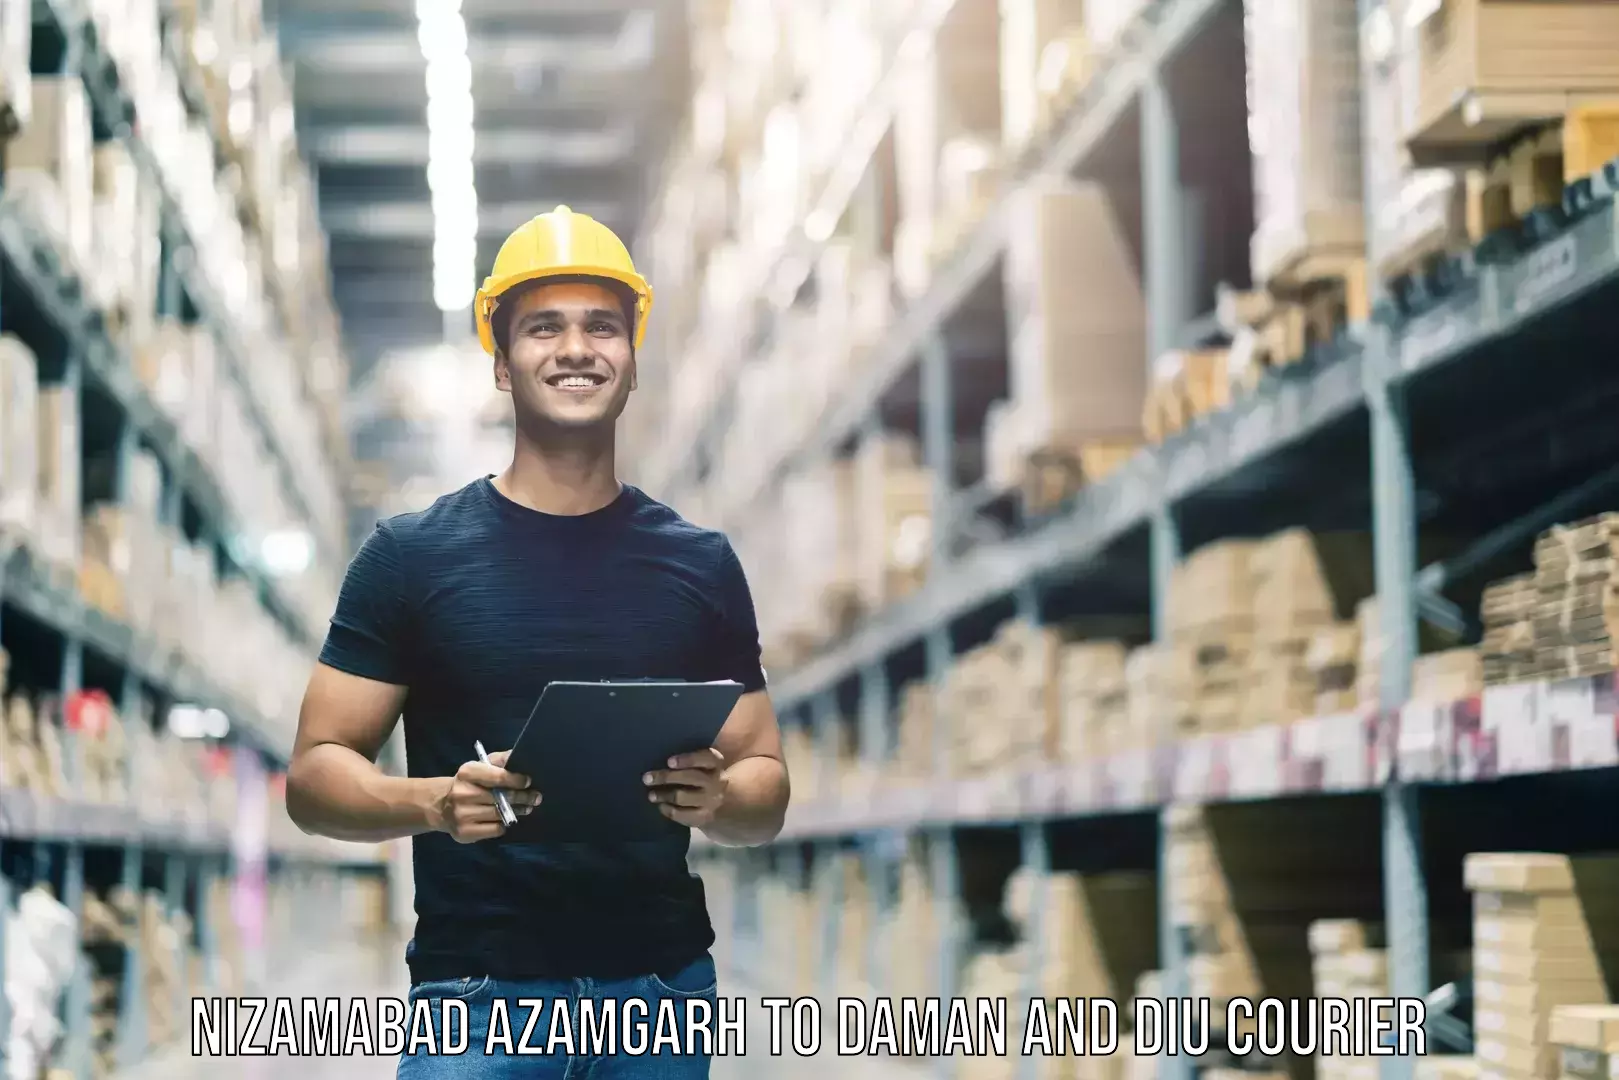 Baggage shipping quotes Nizamabad Azamgarh to Diu